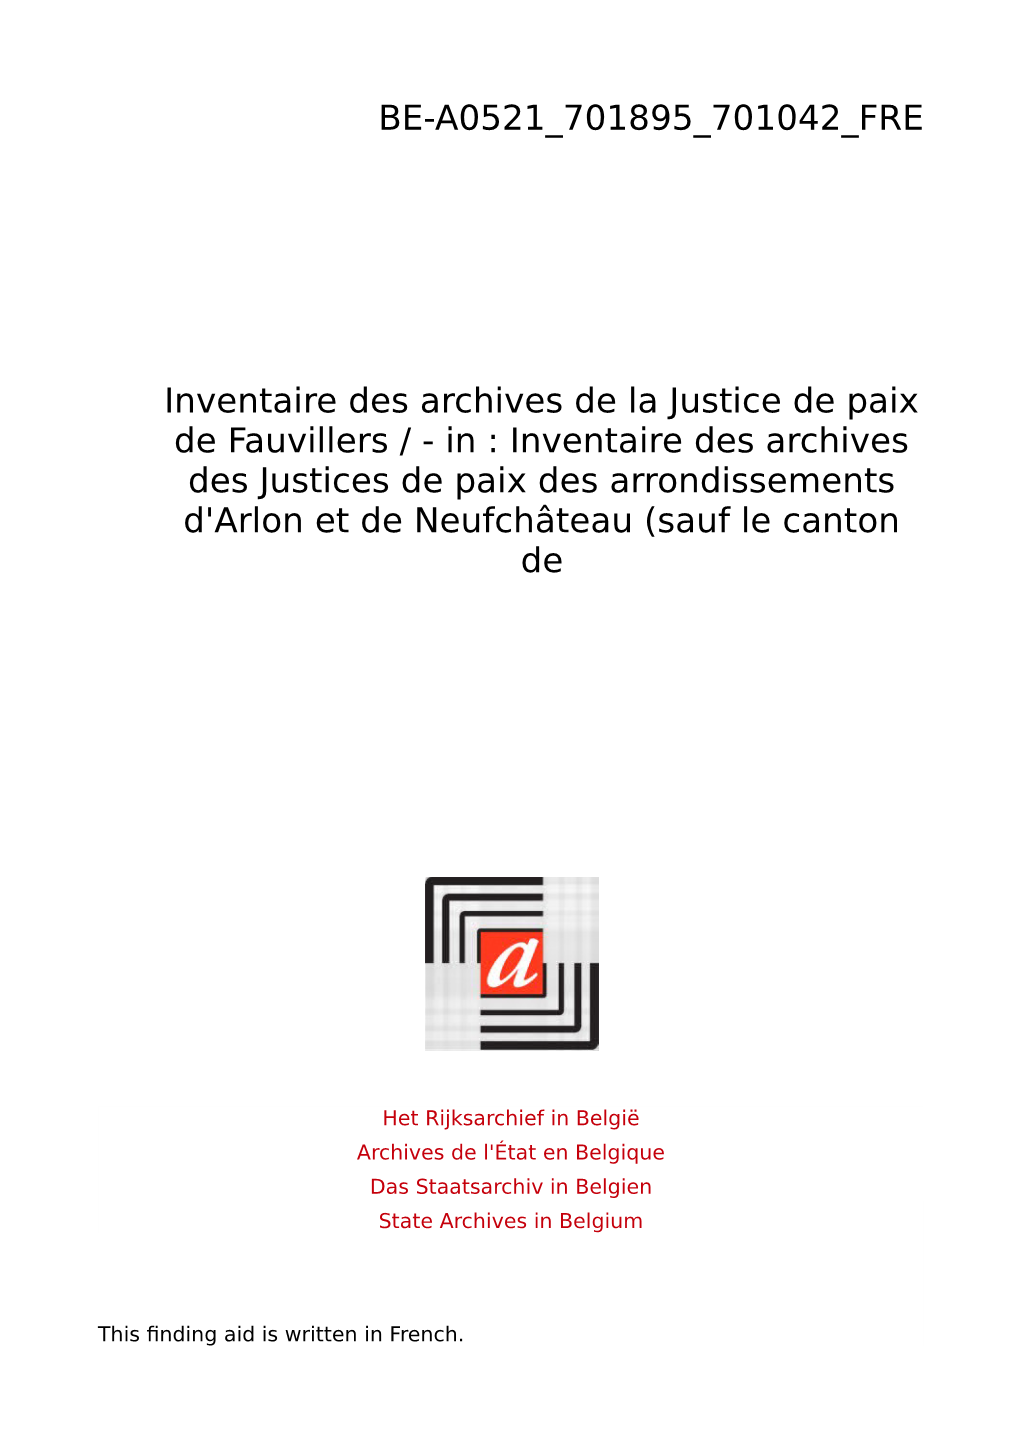 Justice De Paix De Fauvillers / - in : Inventaire Des Archives Des Justices De Paix Des Arrondissements D'arlon Et De Neufchâteau (Sauf Le Canton De